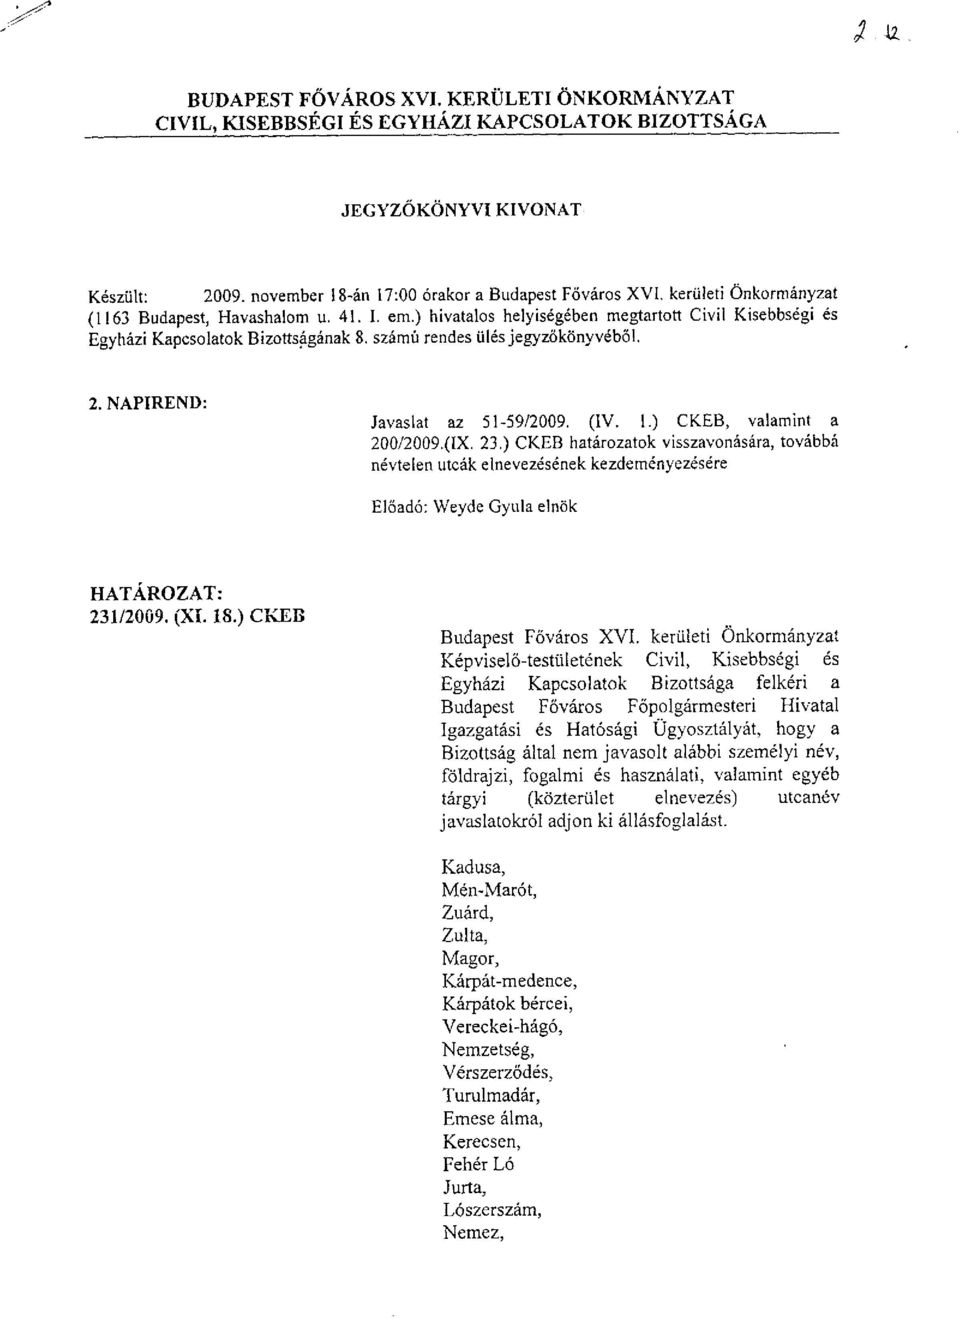 ) CKEB, valamint a 200/2009.(IX. 23.) CKEB határozatok visszavonására, továbbá névtelen utcák elnevezésének kezdeményezésére Előadó: Weyde Gyula elnök 231/2009. (XI. 18.